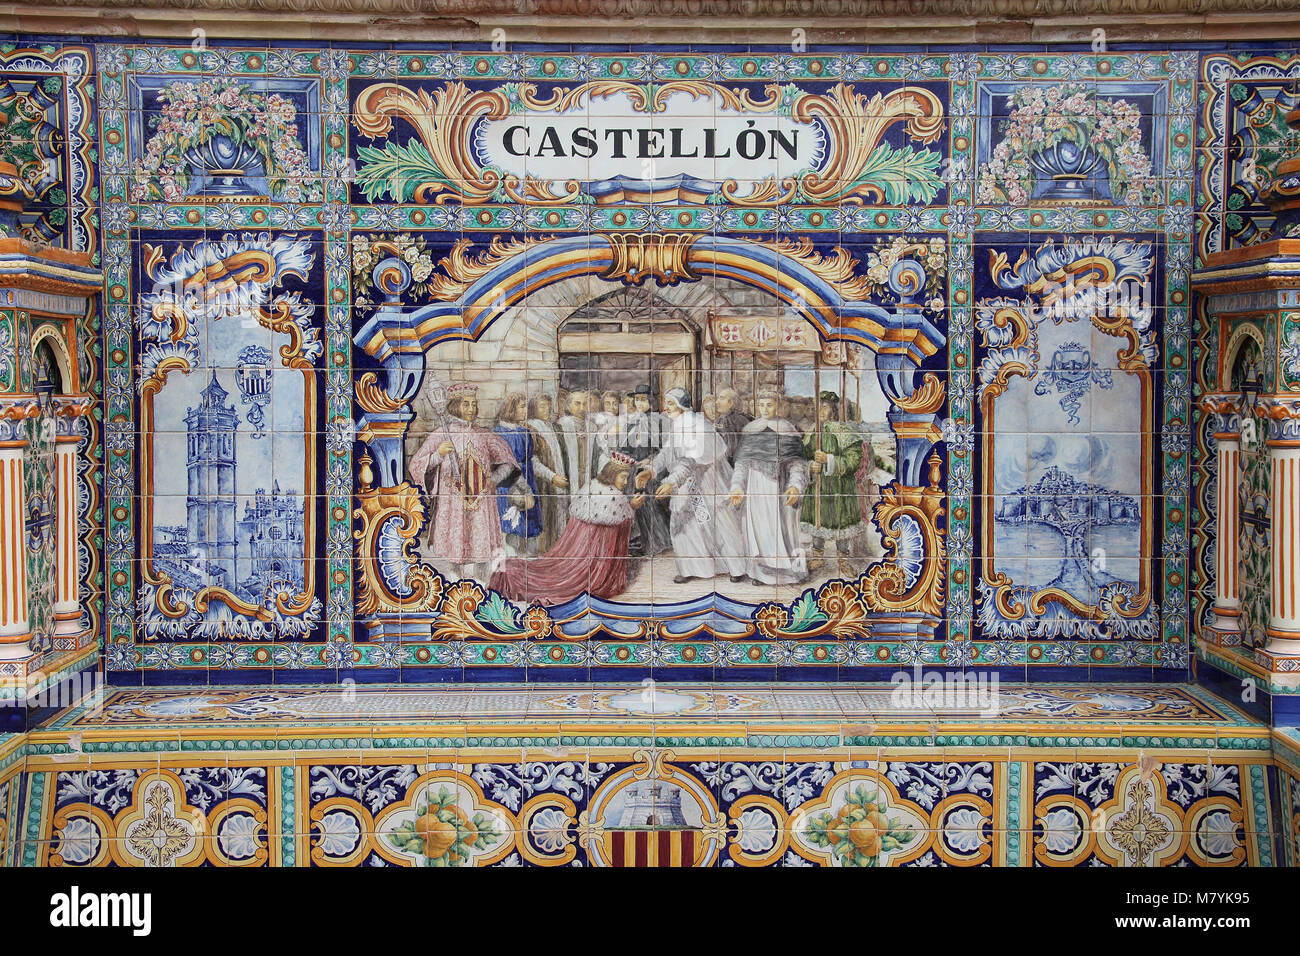 Castellon alcove at Plaza de Espana Stock Photo